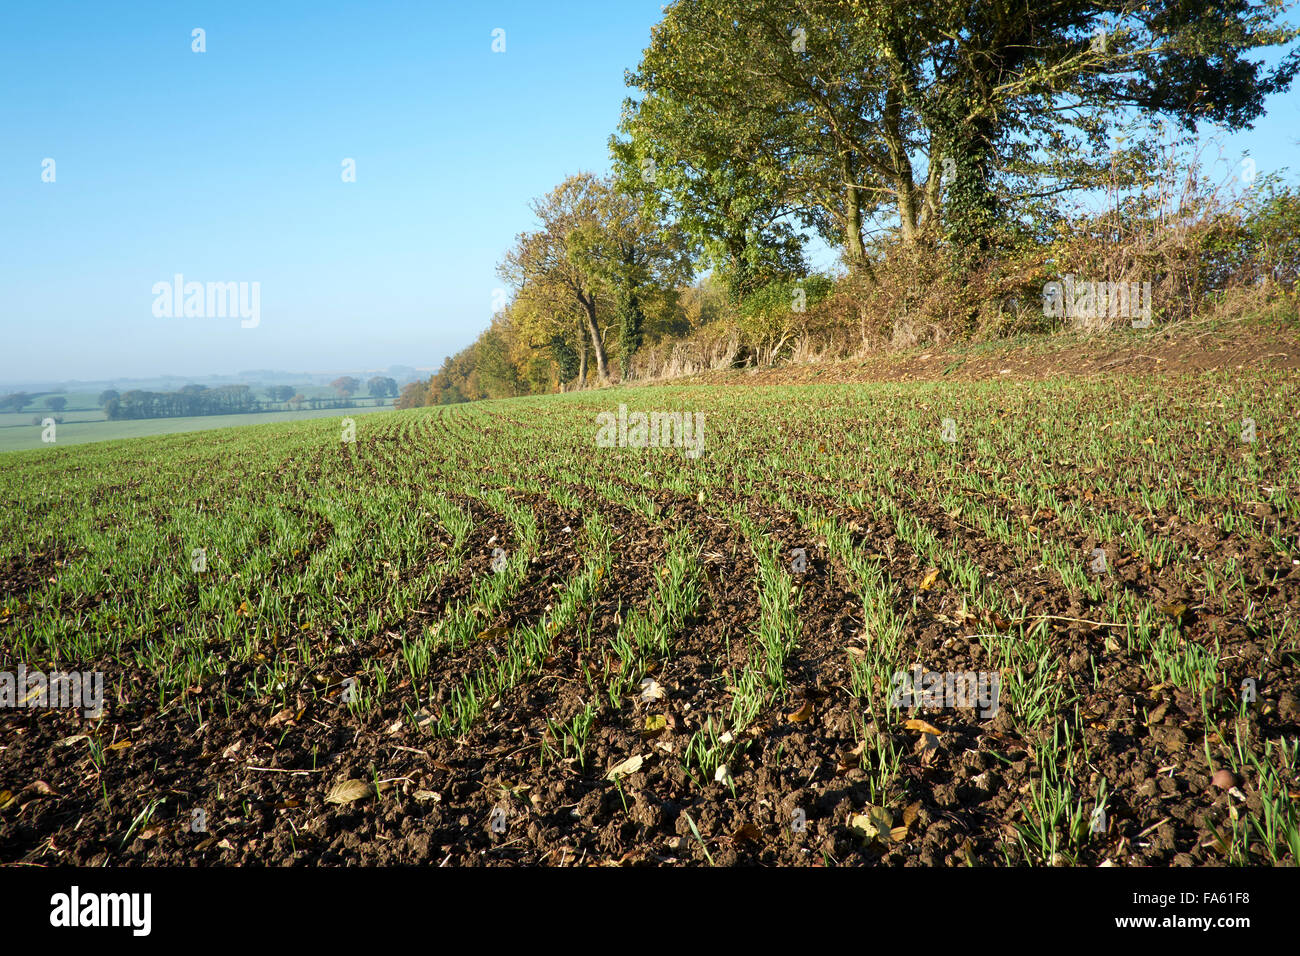 Winter Wheat crop growing in field. Stock Photo